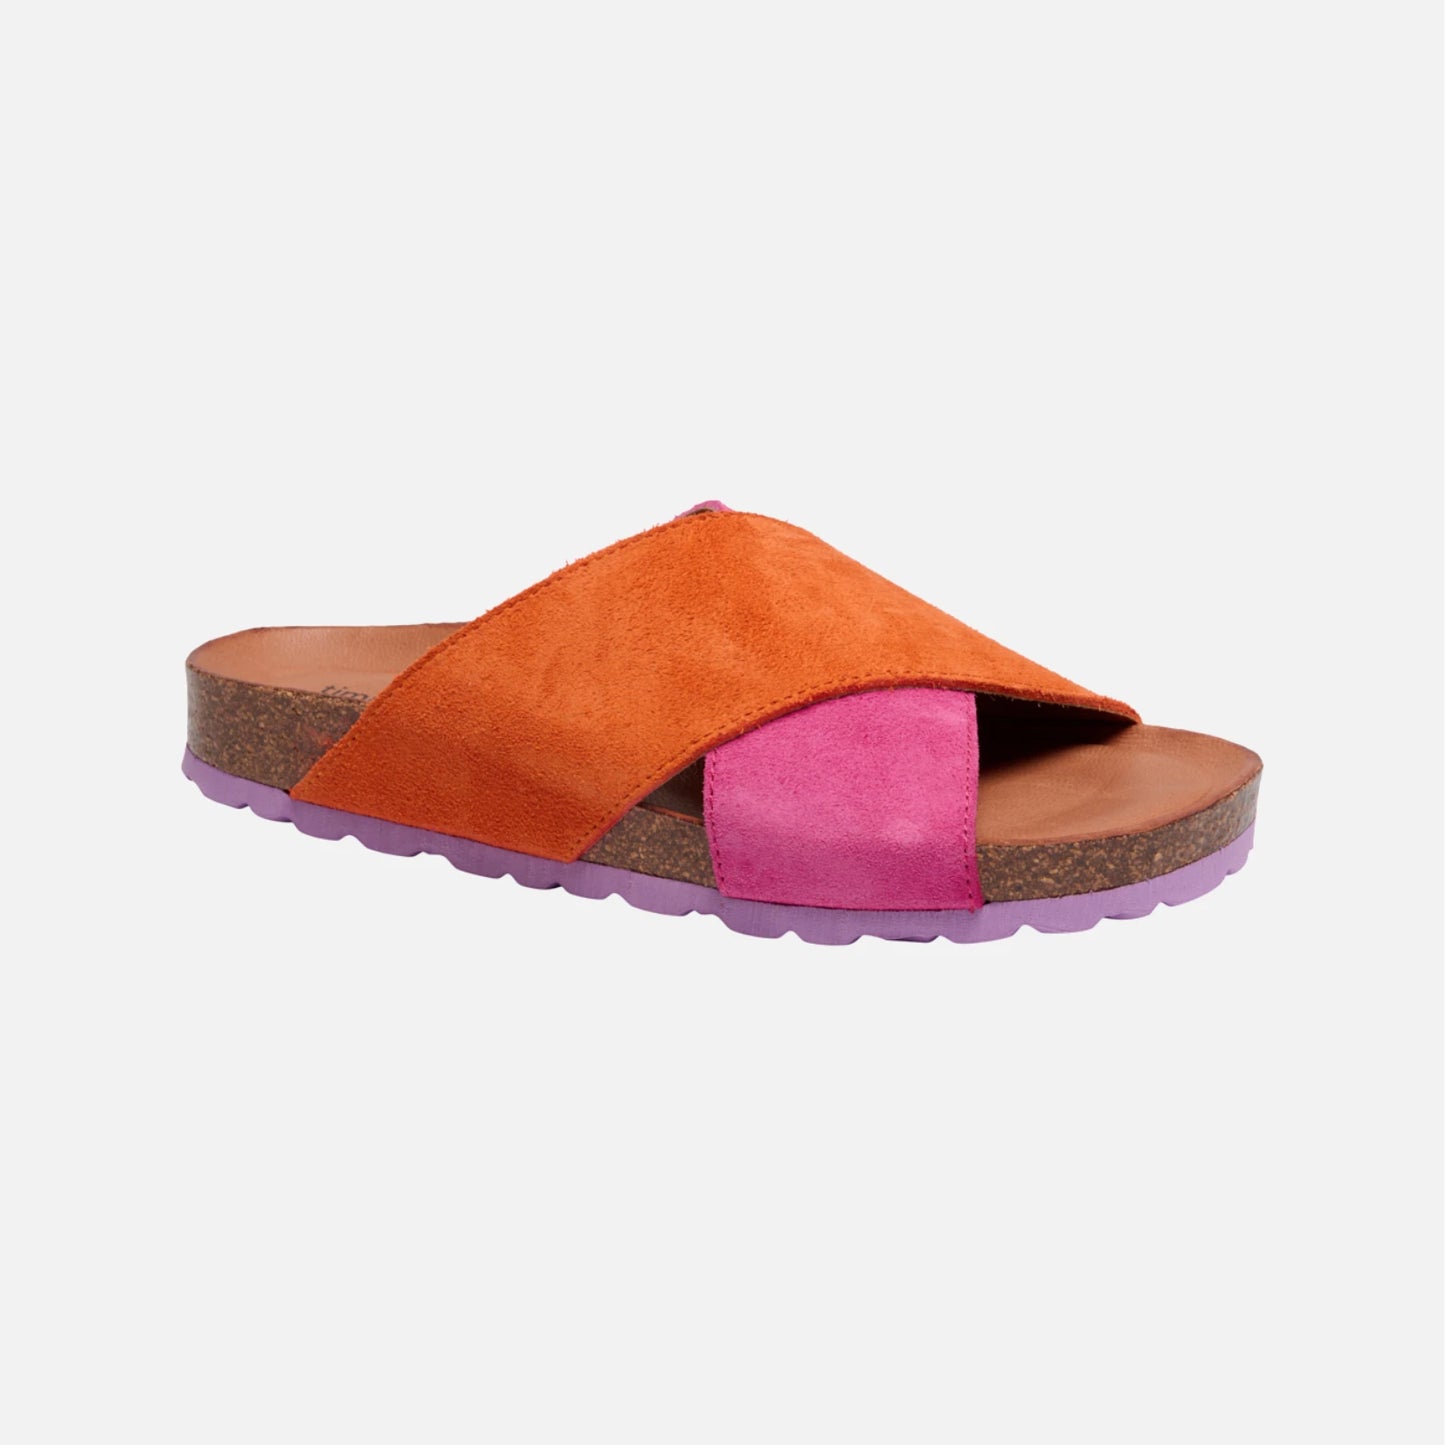 & Simonsen - Annet Multi Sandaler - Orange/Pink - Kolonicopenhagen